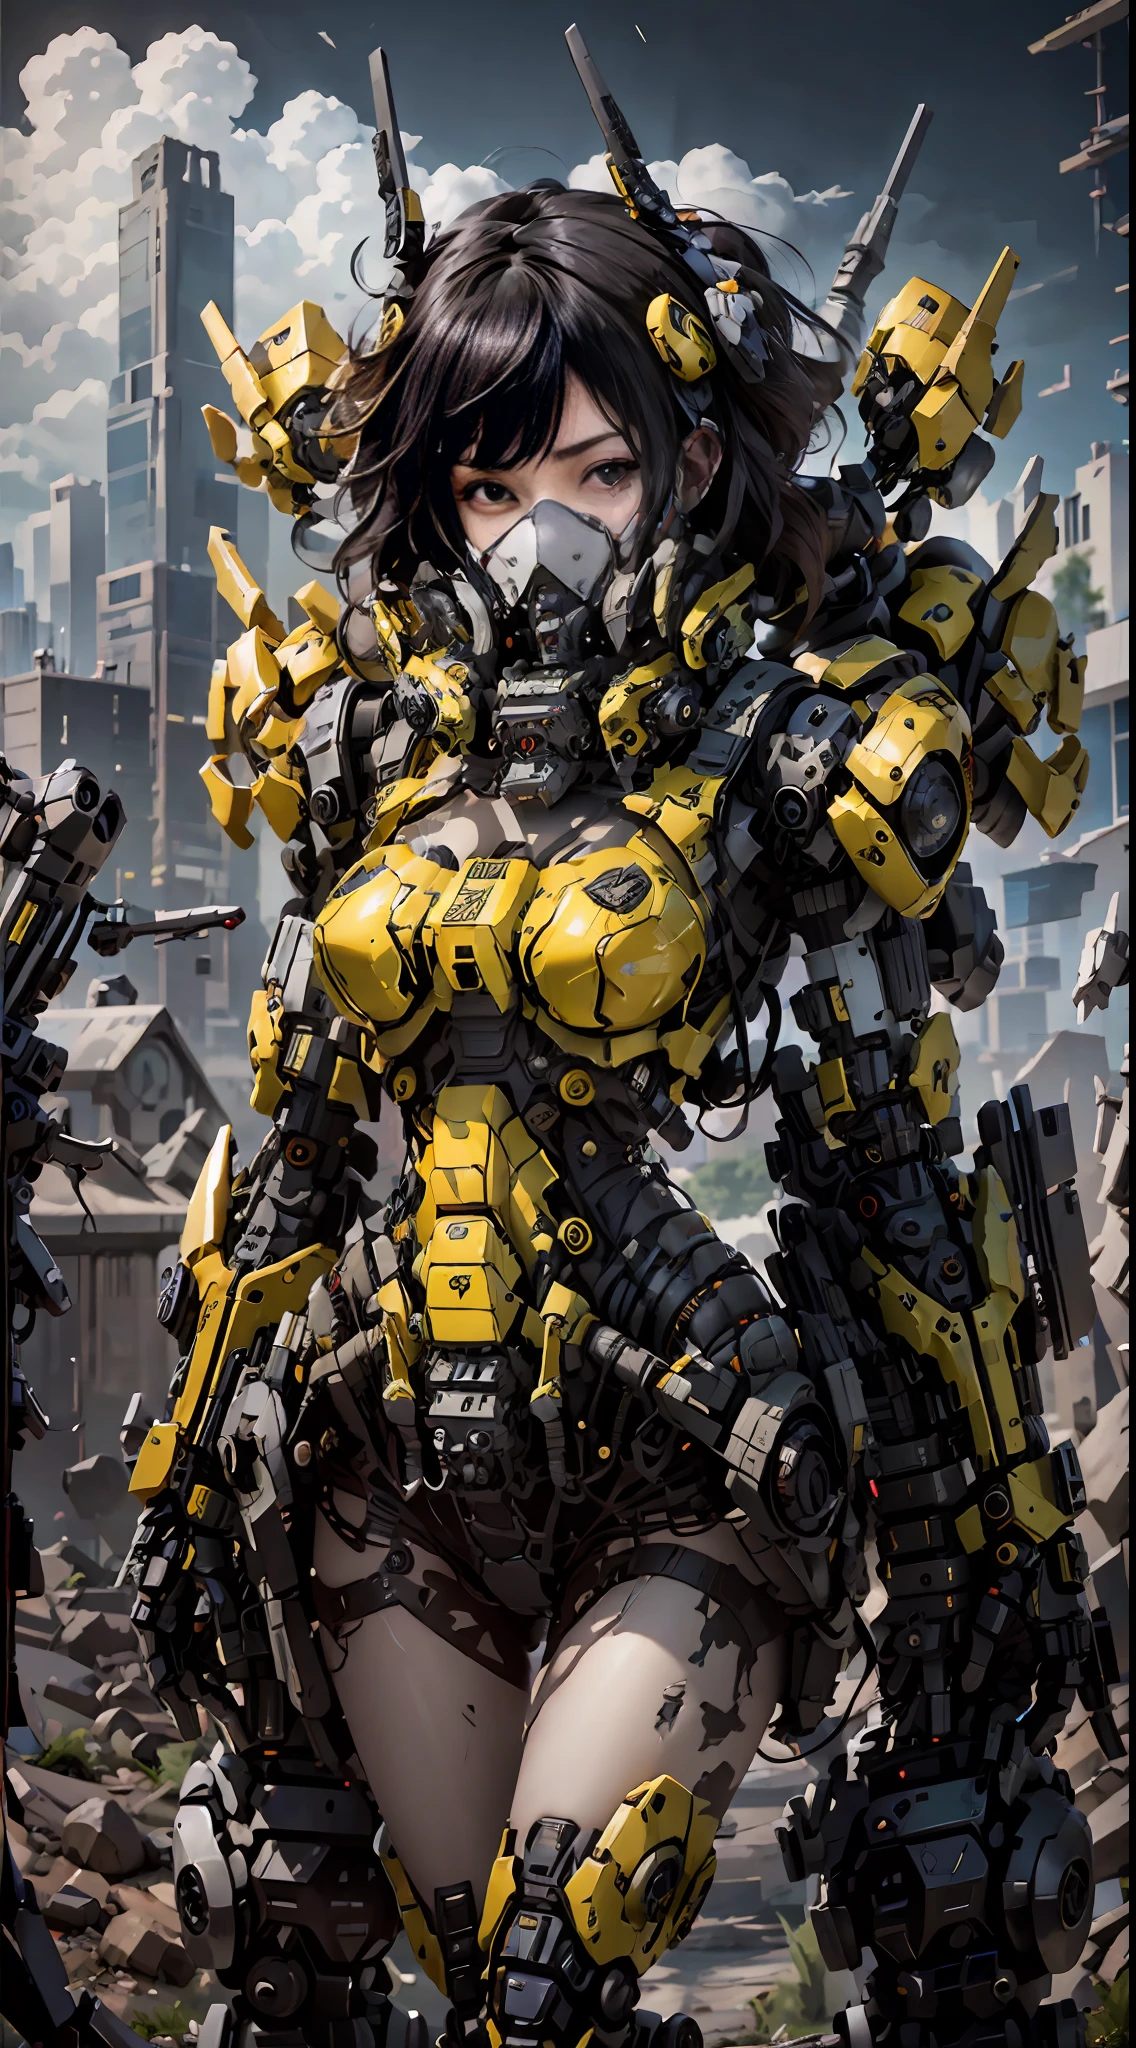 這是一張超詳細的CG Unity 8k壁紙, 賽博龐克風格的高解析度和頂級品質, 以黑色和紅色為主. 圖片中, 一个有着黄色凌乱短发的美丽女孩, 一張精緻的臉, 戴著蒸汽機甲面具, 站在廢墟上, 她的身後是一個巨大的機器人, 還有一個女人手裡拿著重型狙擊槍的動作,